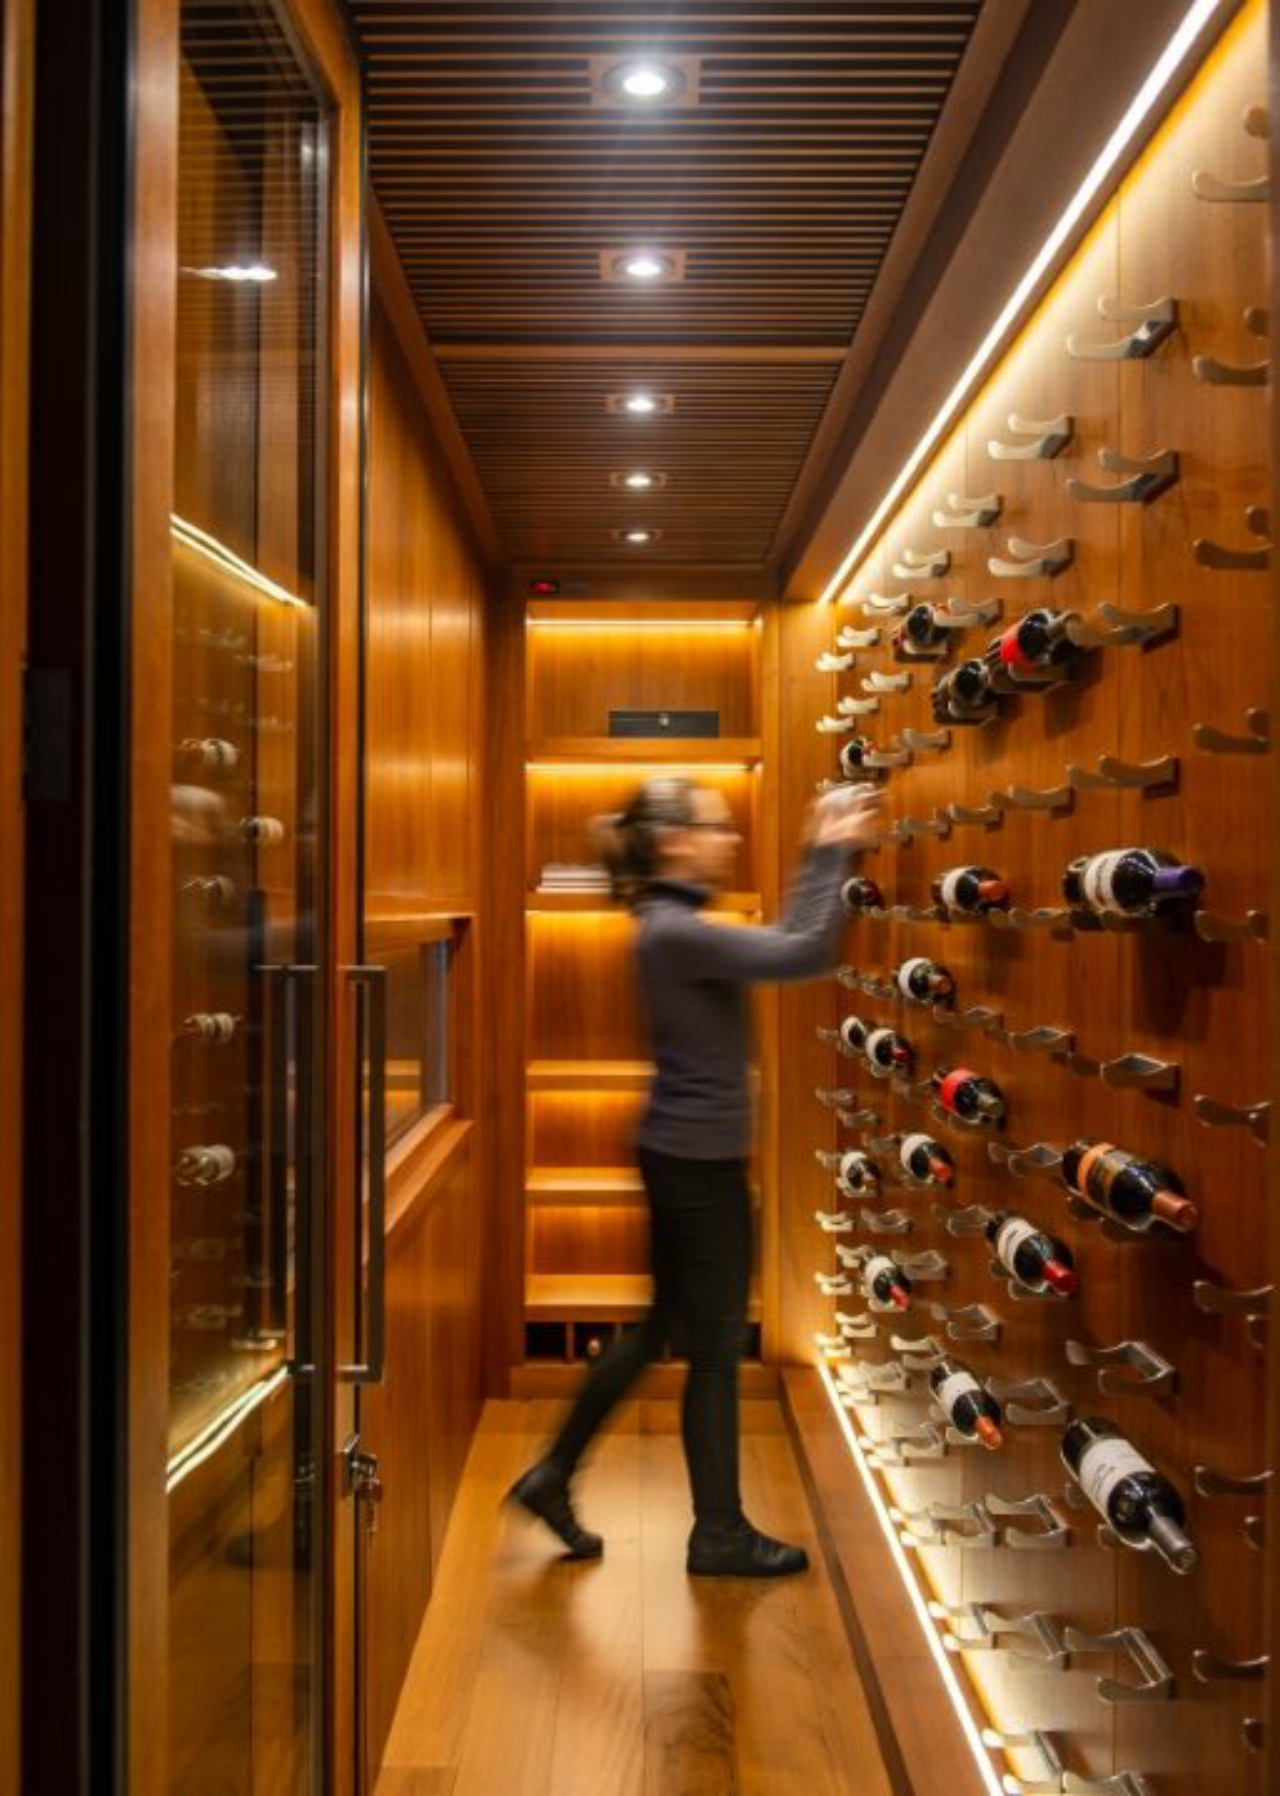 A adega climatizada desenvolvida sob medida para a cliente que desejava um espaço especial para guardar seus vinhos.